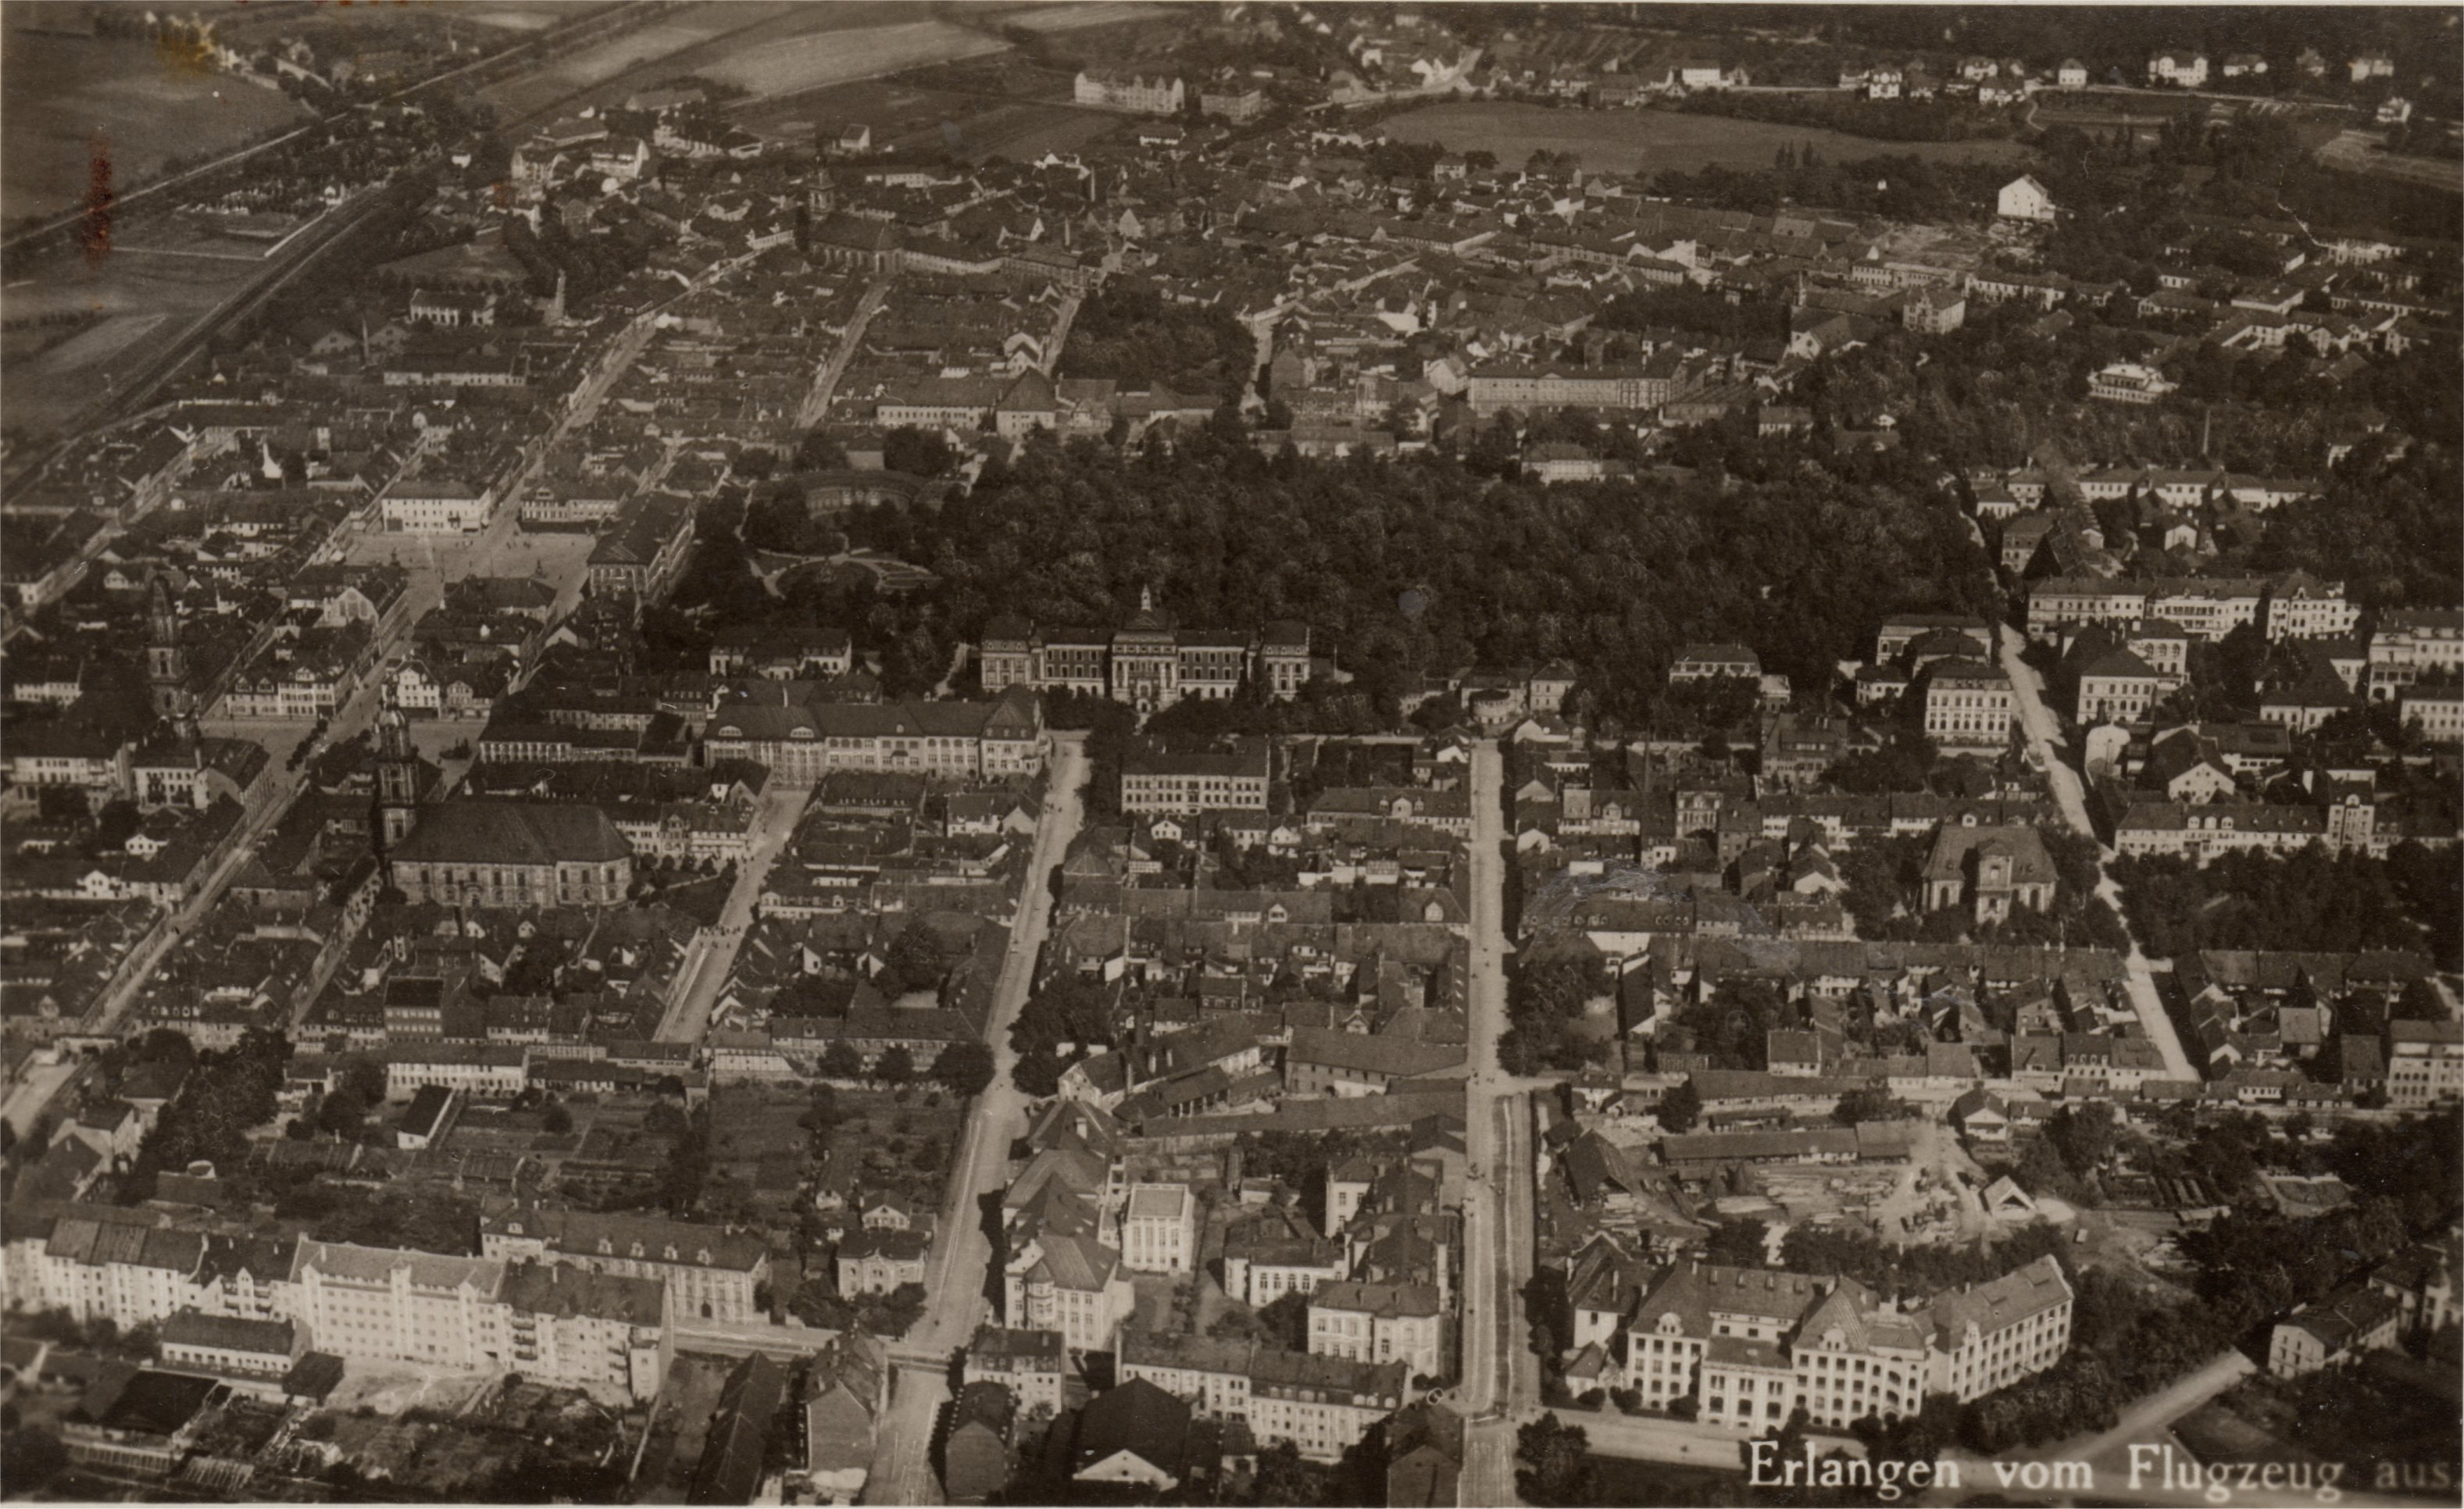 Luftbild Erlangen um 1929